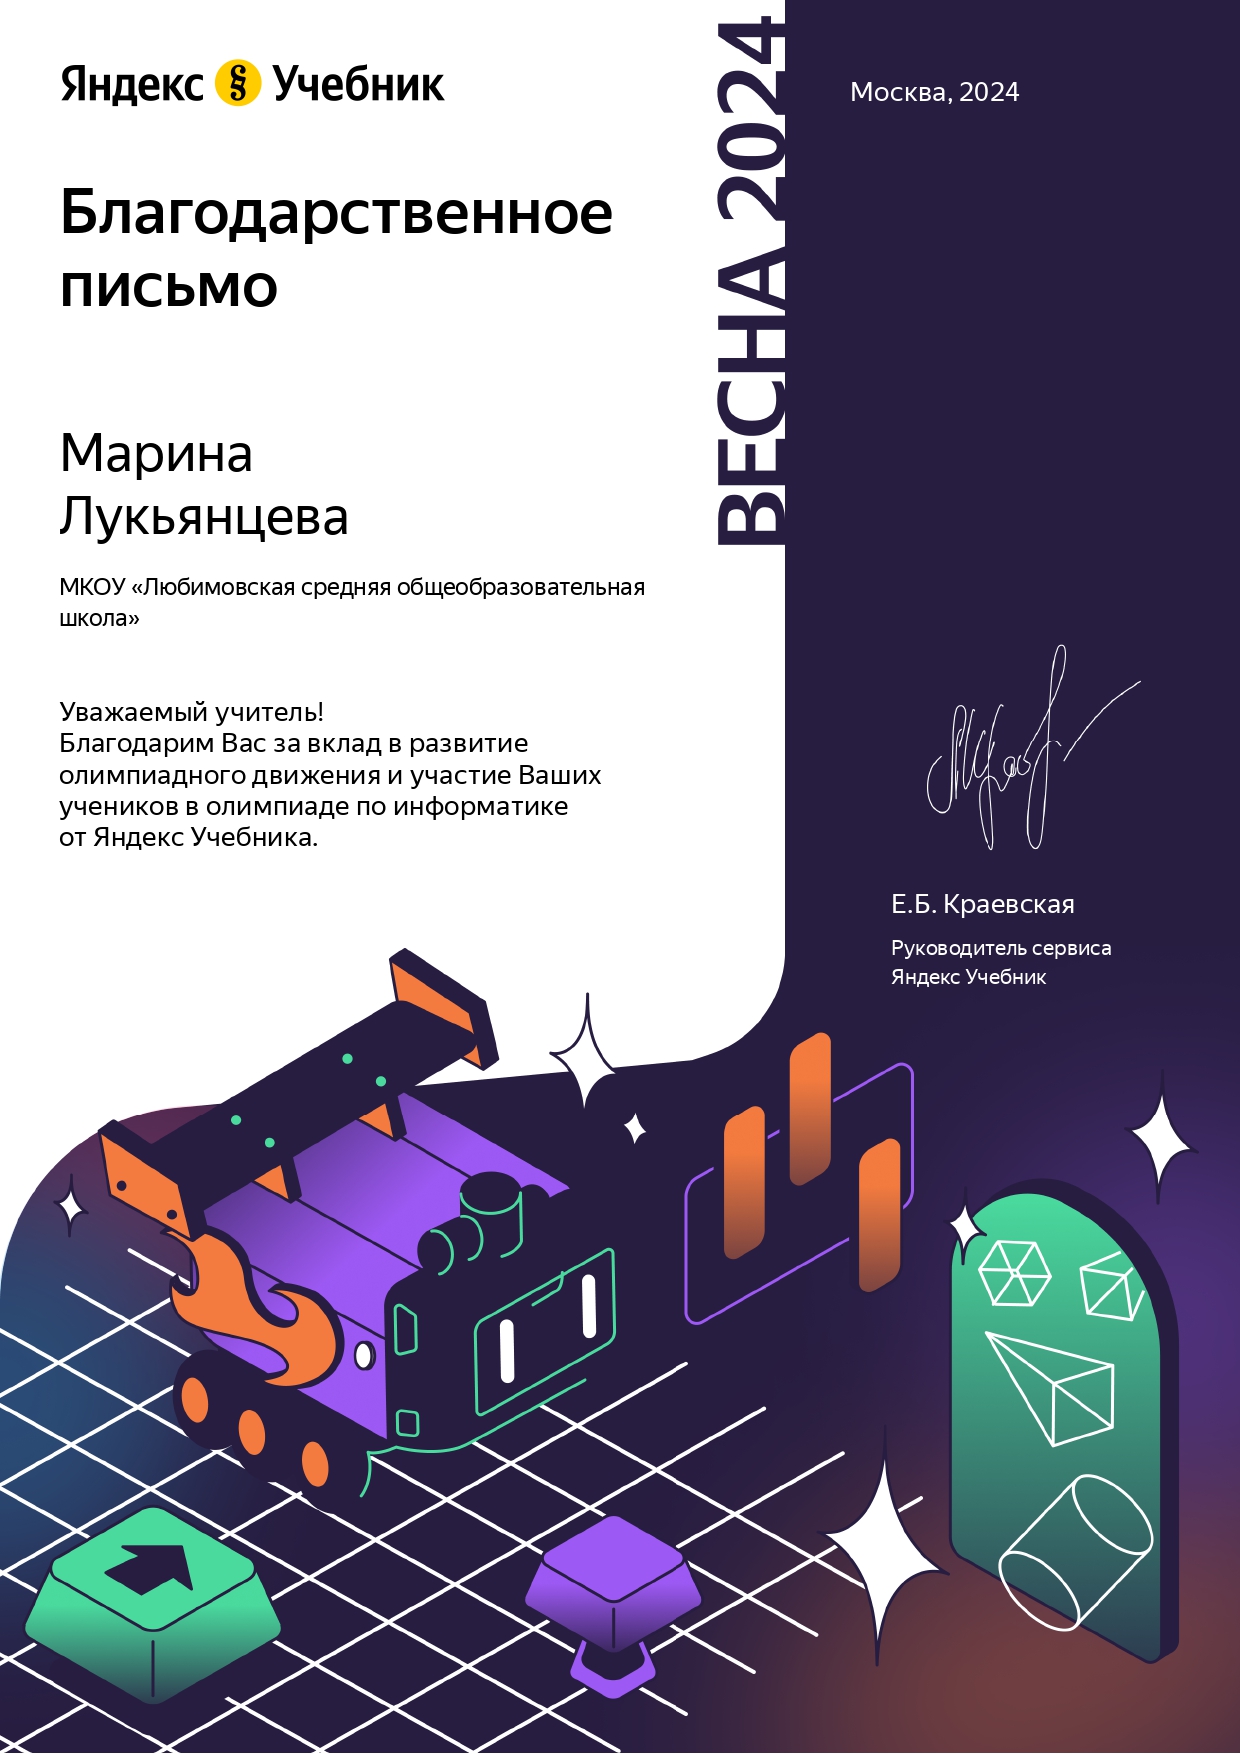 Олимпиада по информатике на ЯндексУчебник.